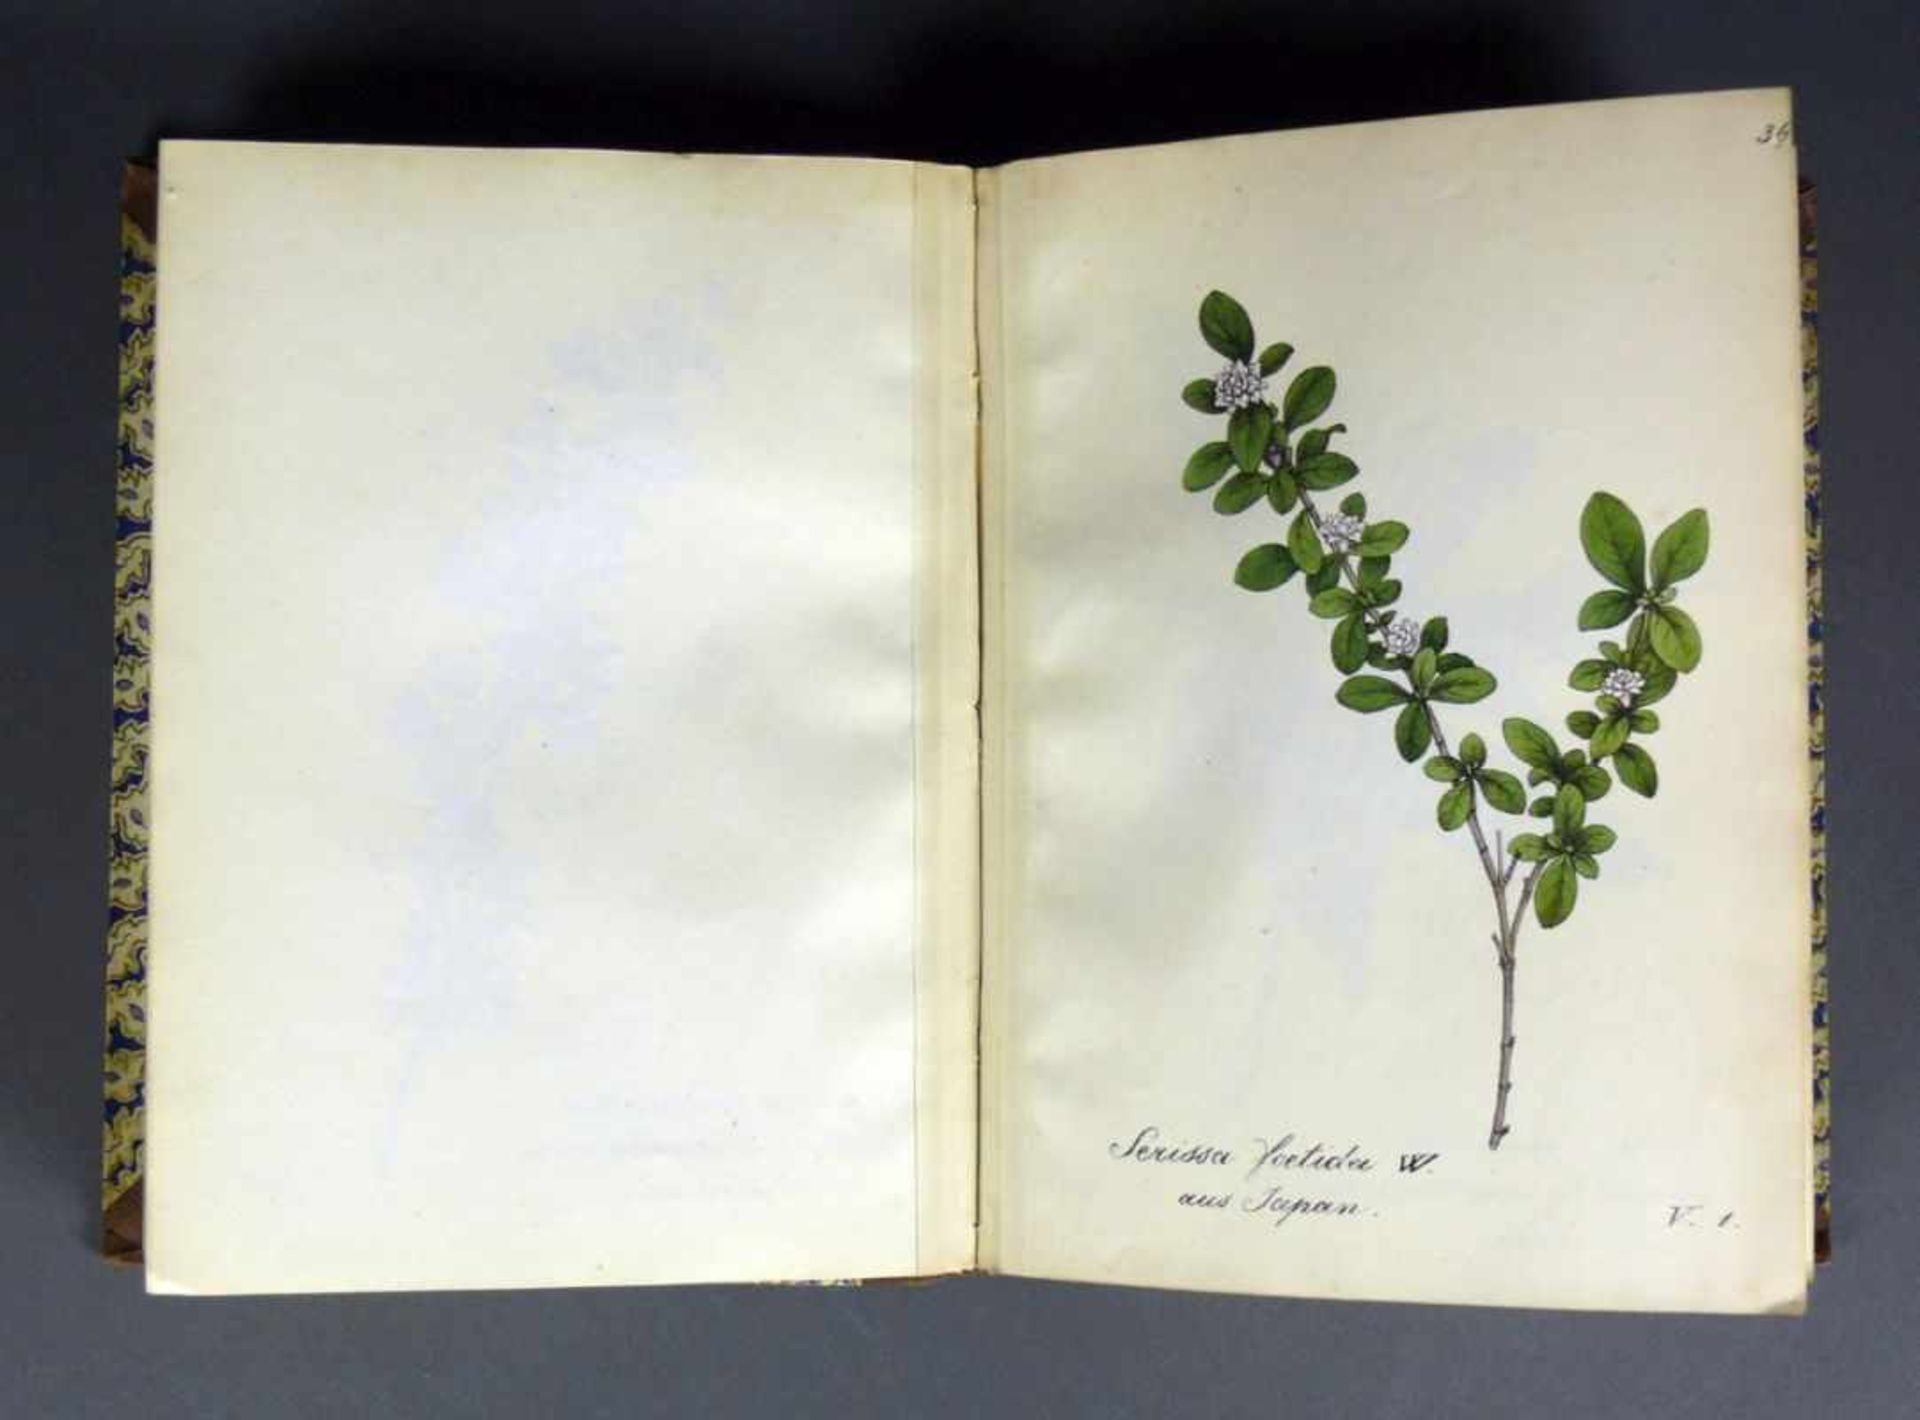 Labram-Zierpflanzen Sammlung von Zierpflanzen nach der Natur gezeichnet und colorirt von J.D. - Image 6 of 7